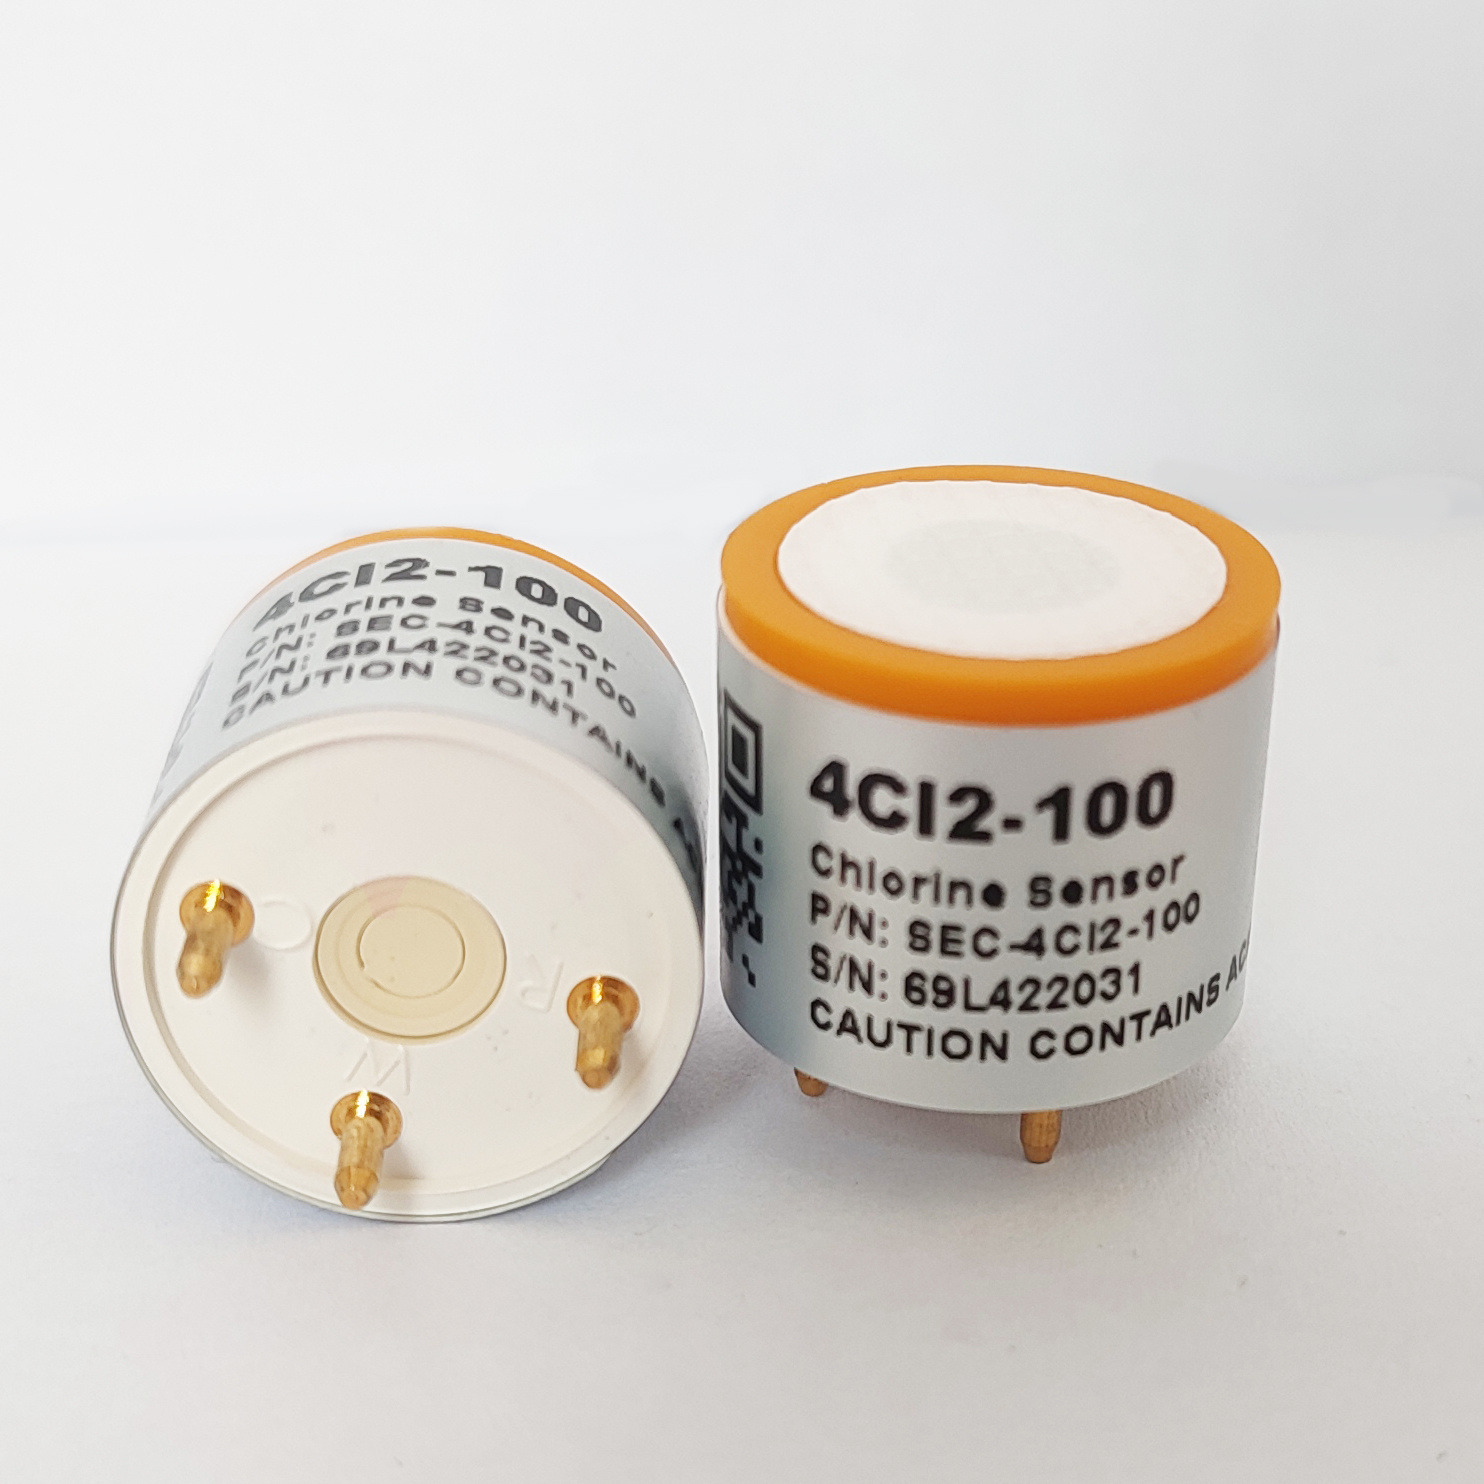 爱和瑞 电化学气体传感器 4Cl2-100 高灵敏度，响应快，寿命长